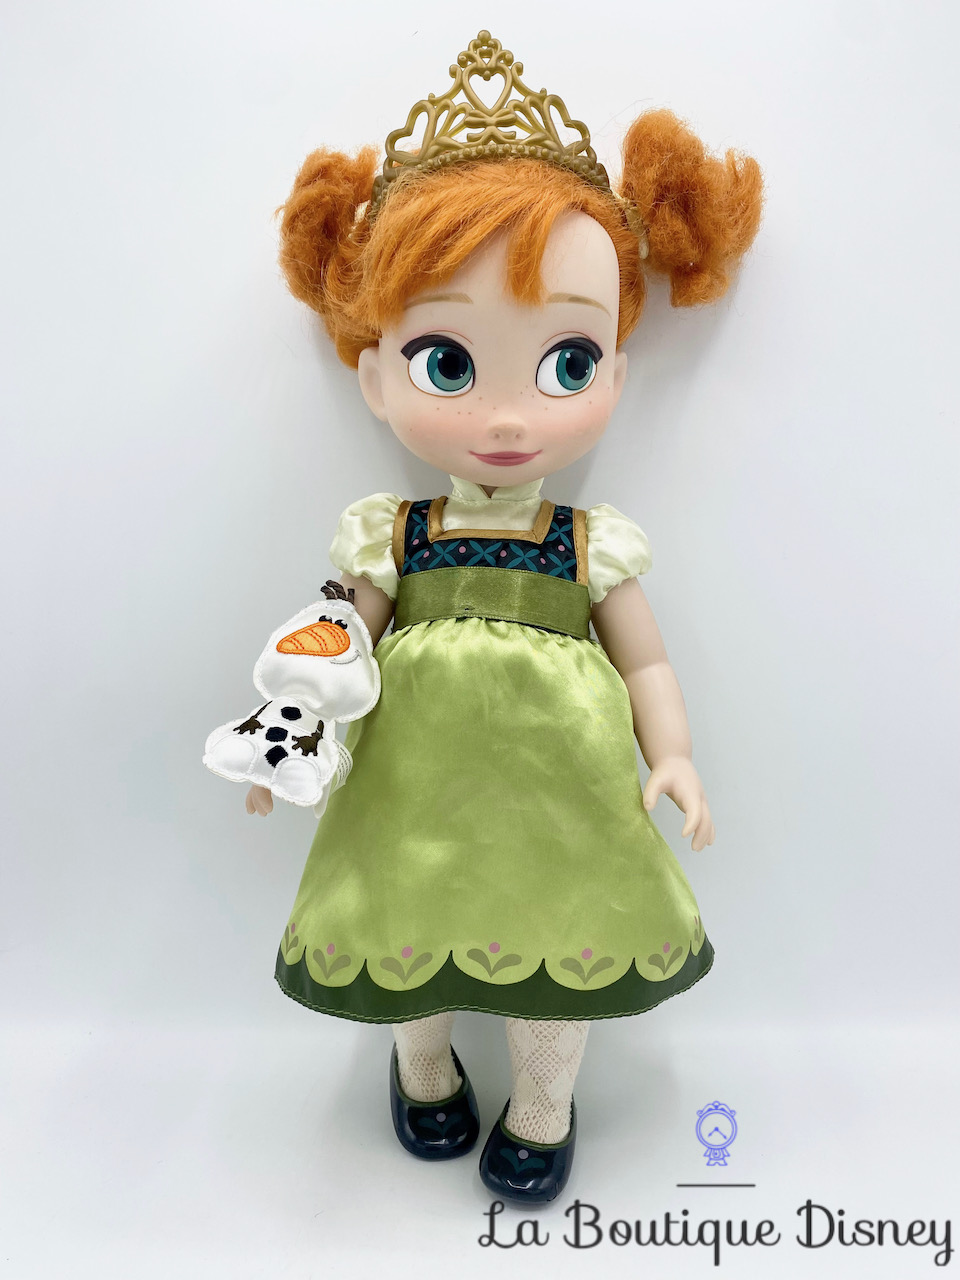 Mini Poupée Anna et Sven - La Reine des Neiges - La Grande Récré